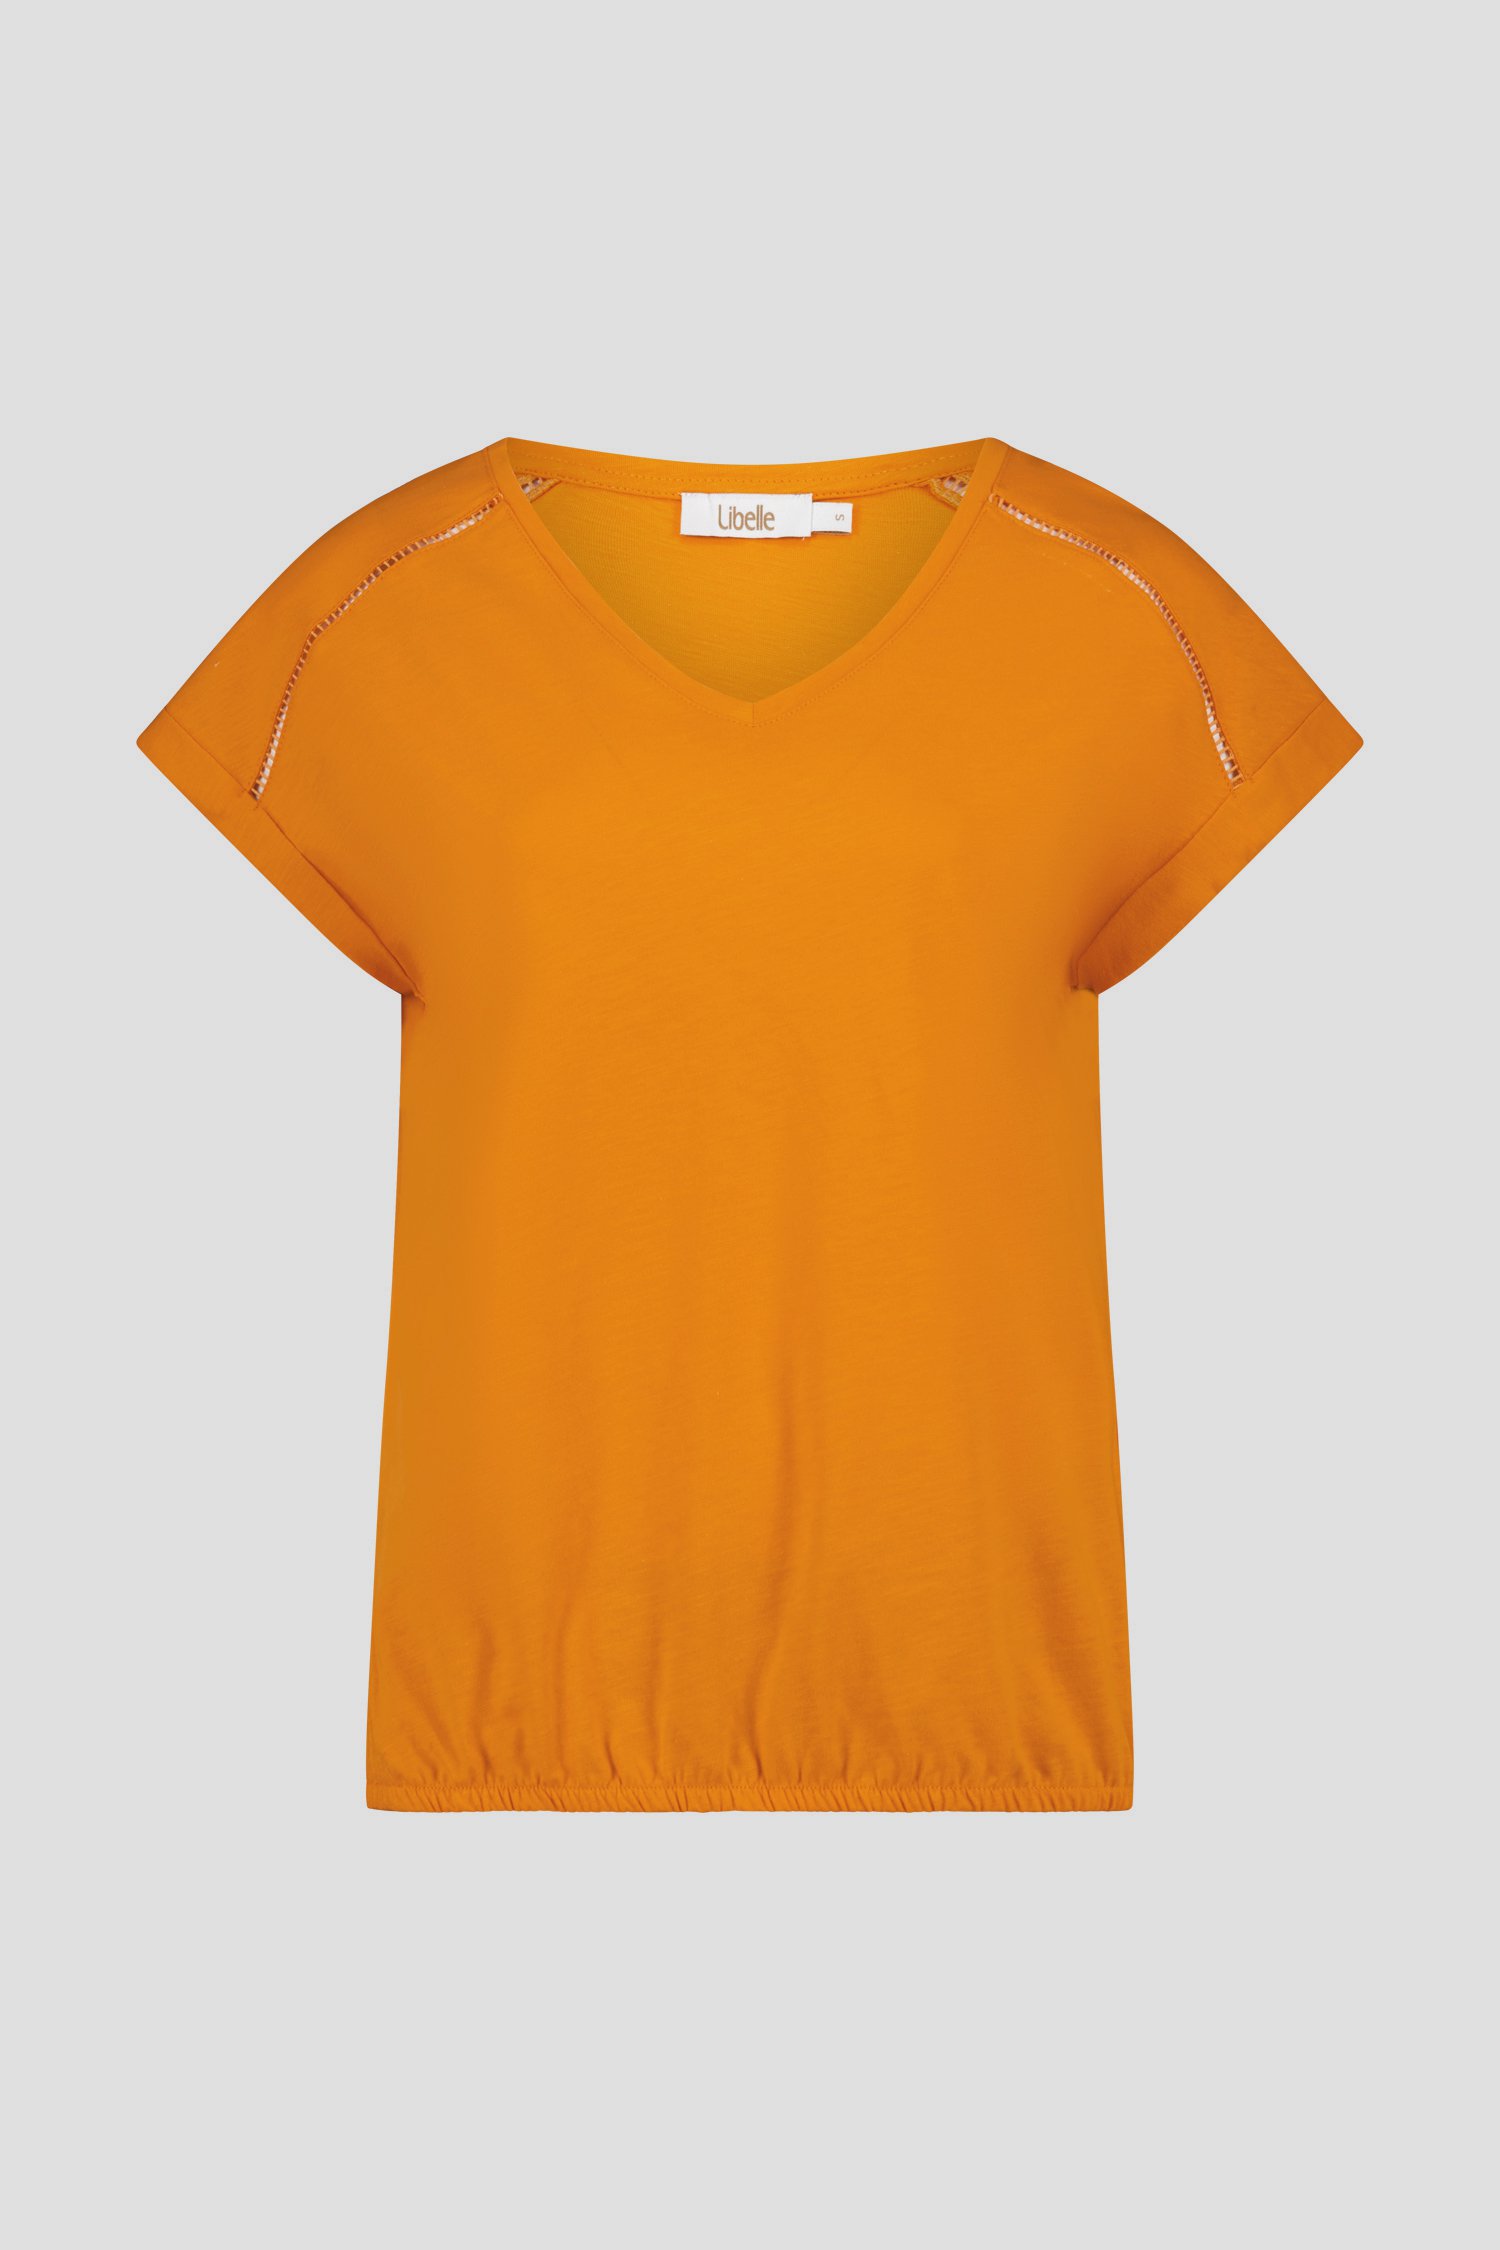 Oranje T-shirt van Libelle voor Dames